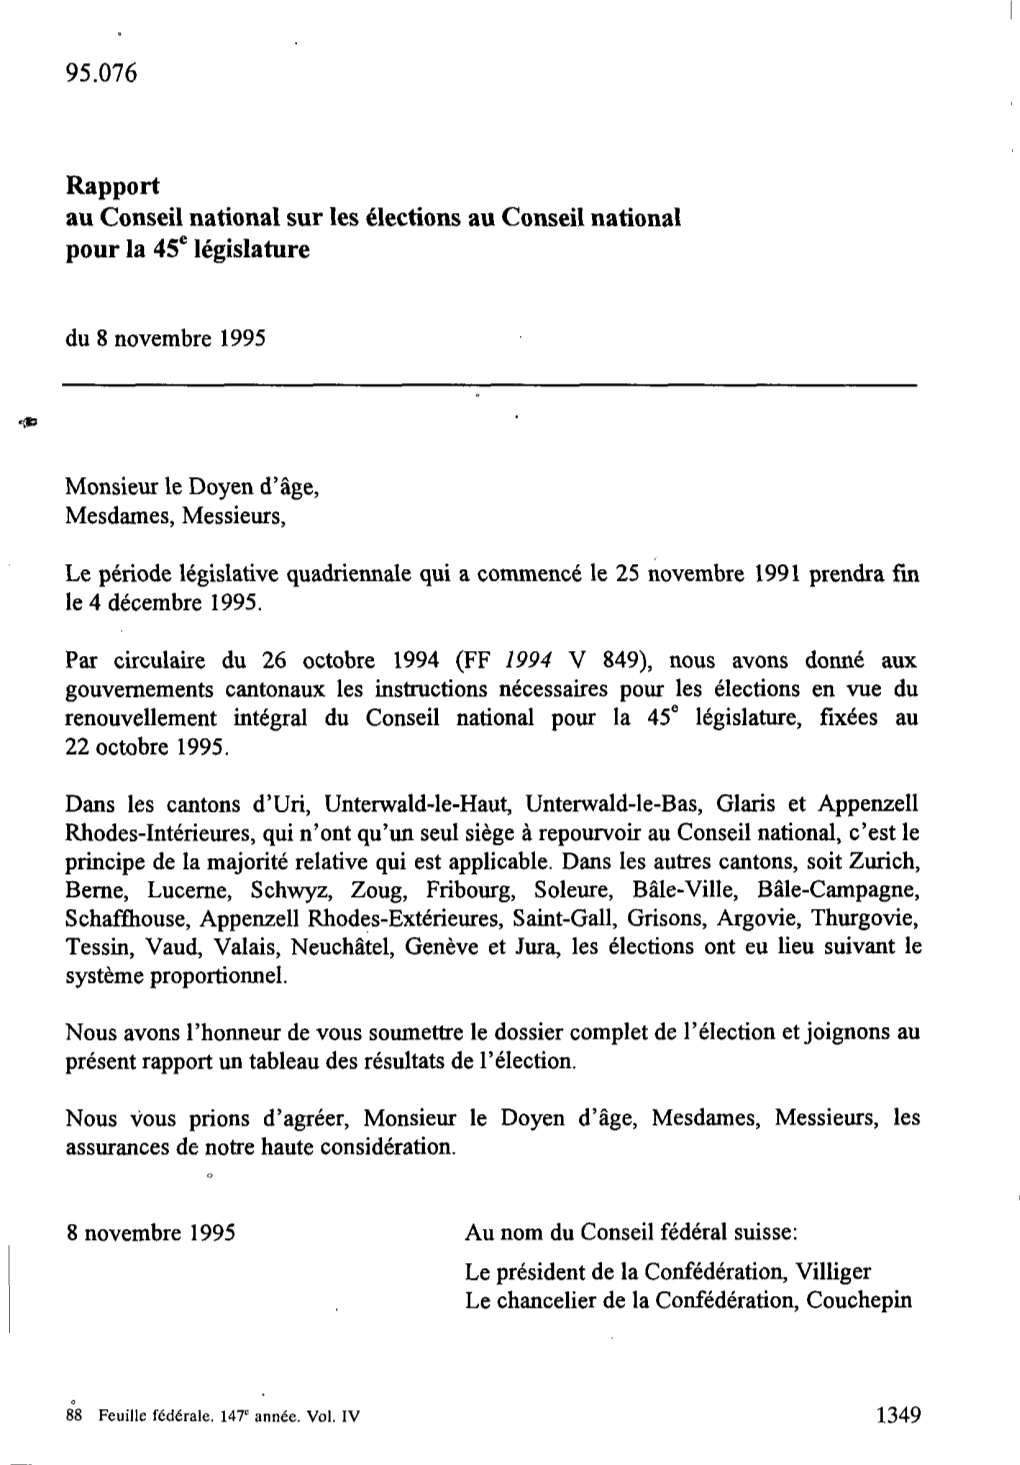 ST# 95.076 Rapport Au Conseil National Sur